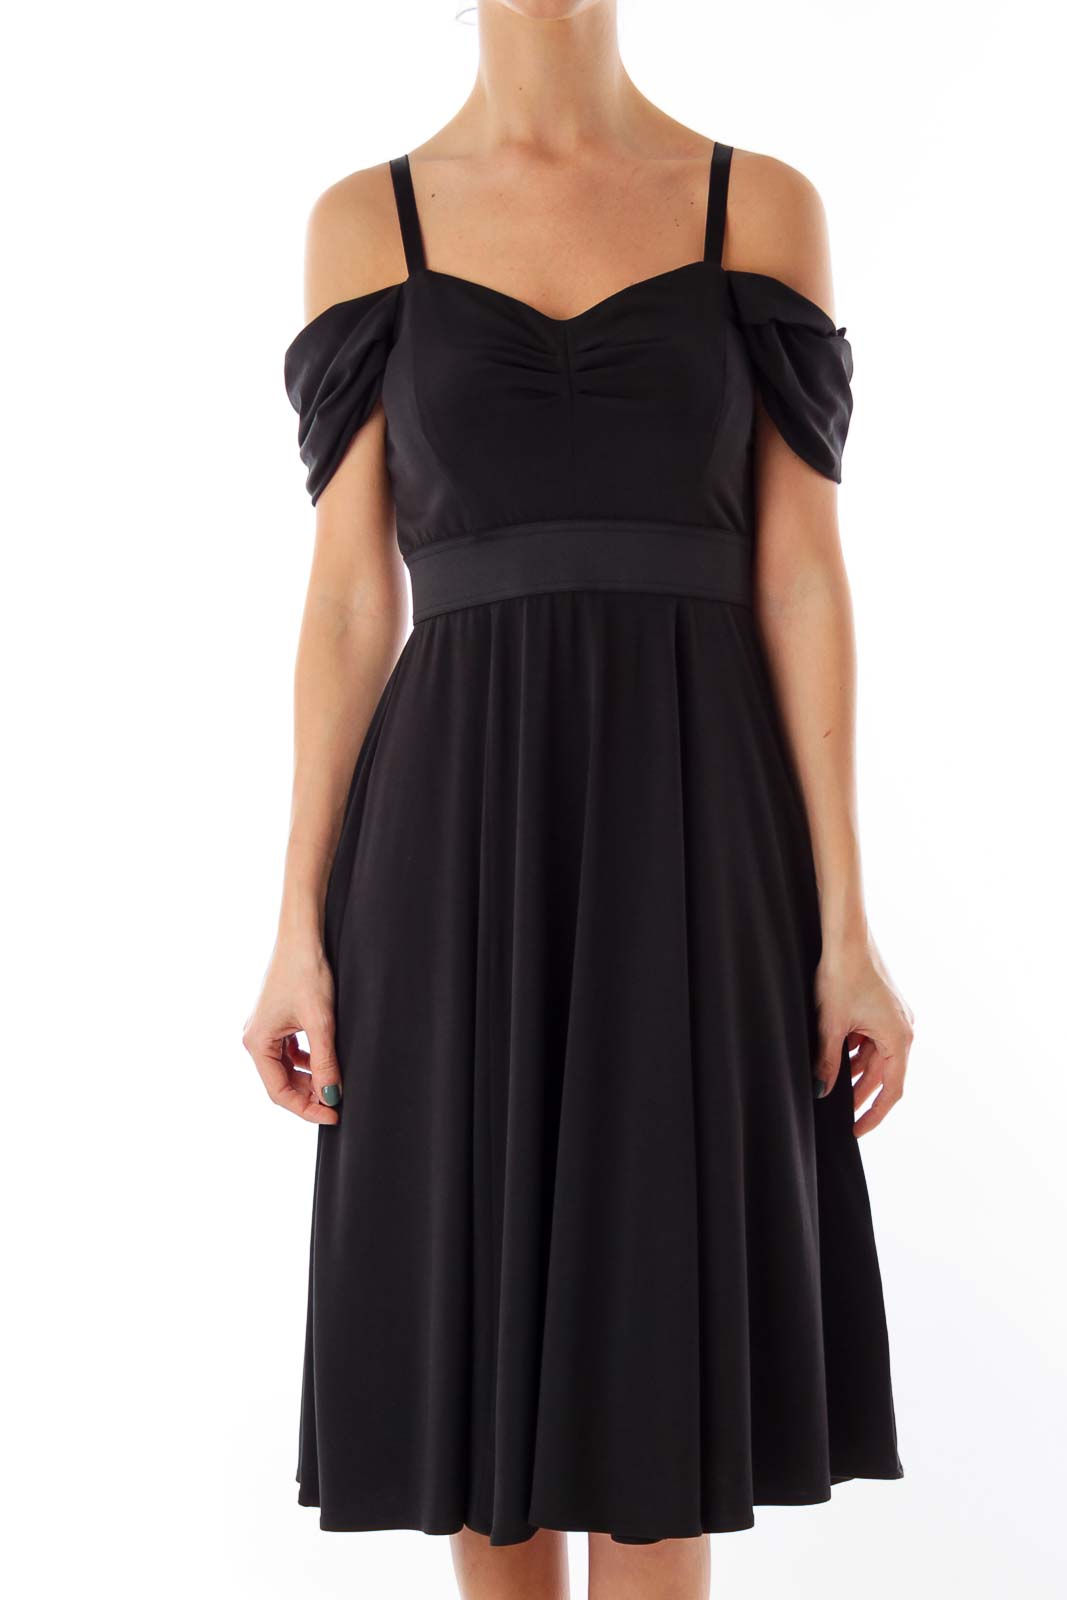 Black Off-The-Shoulder Dress Front